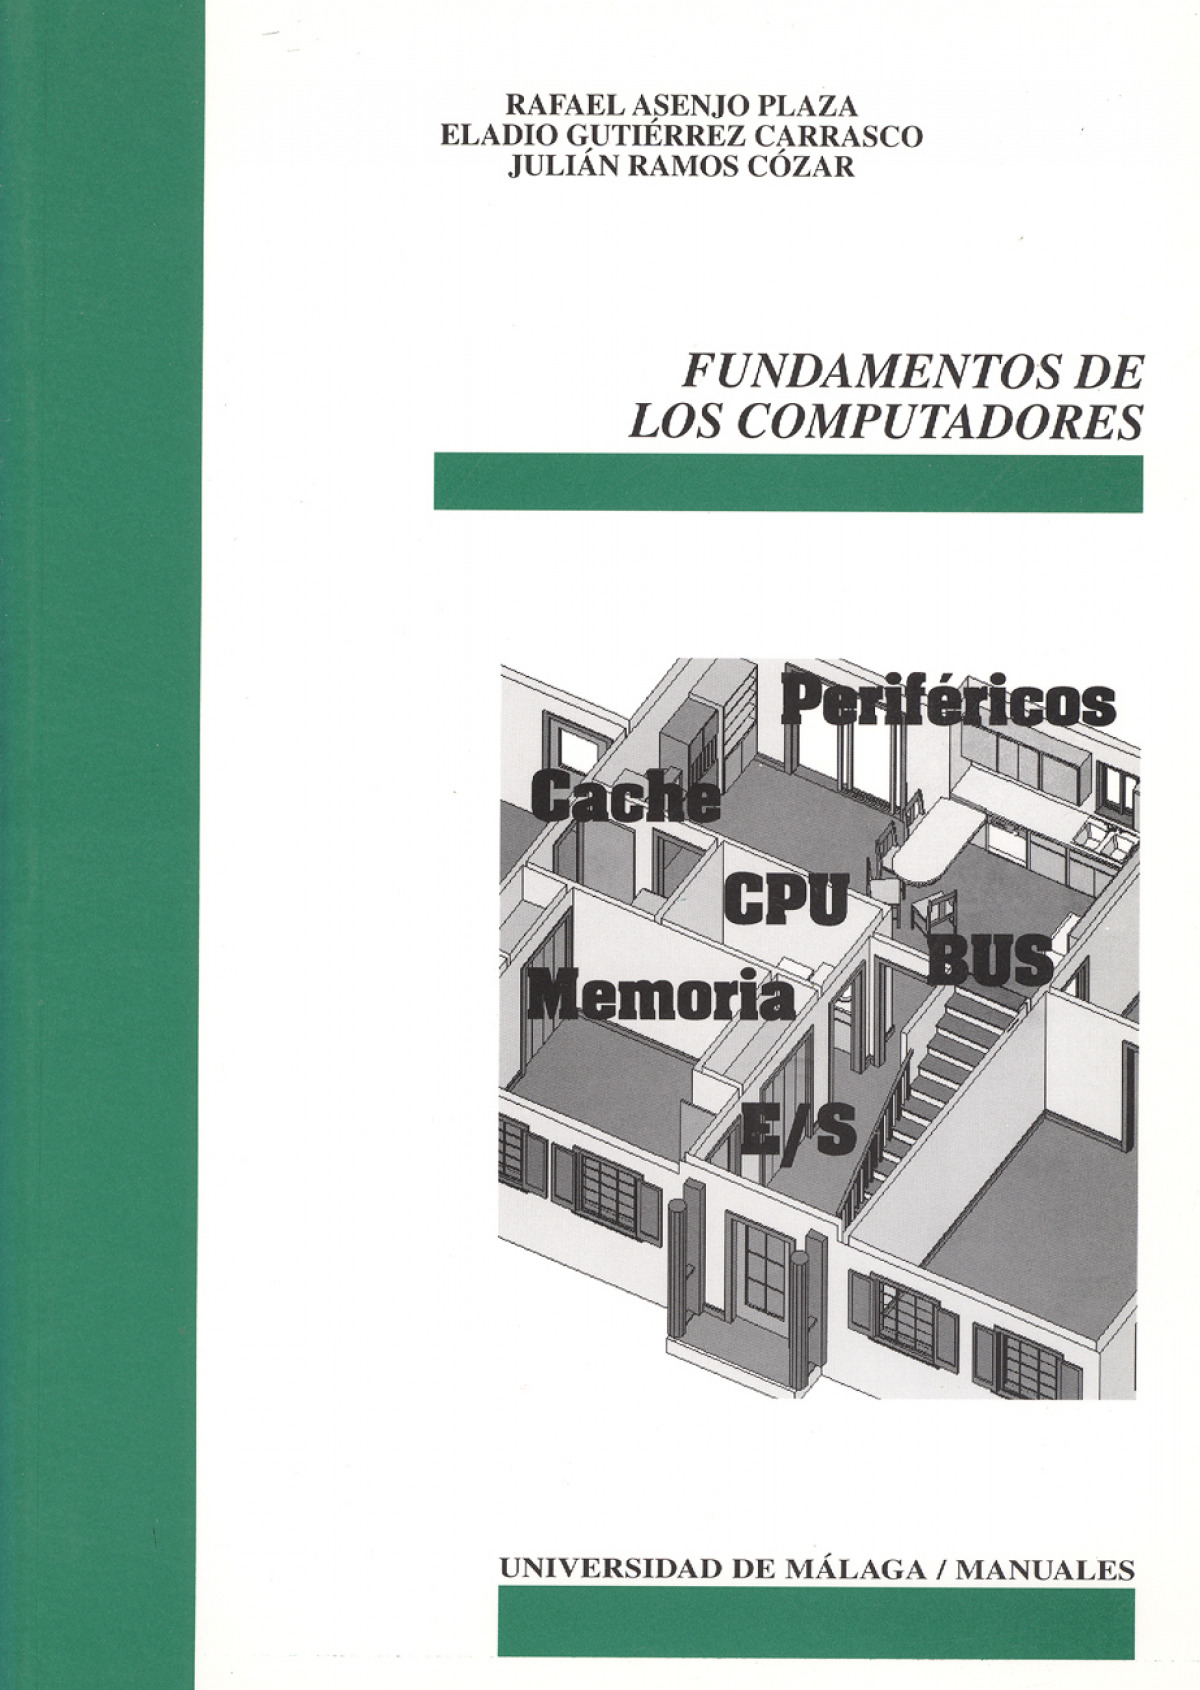 Fundamentos de los computadores (1) - Asenjo Plaza, Rafael. Gutiérrez Carrasco